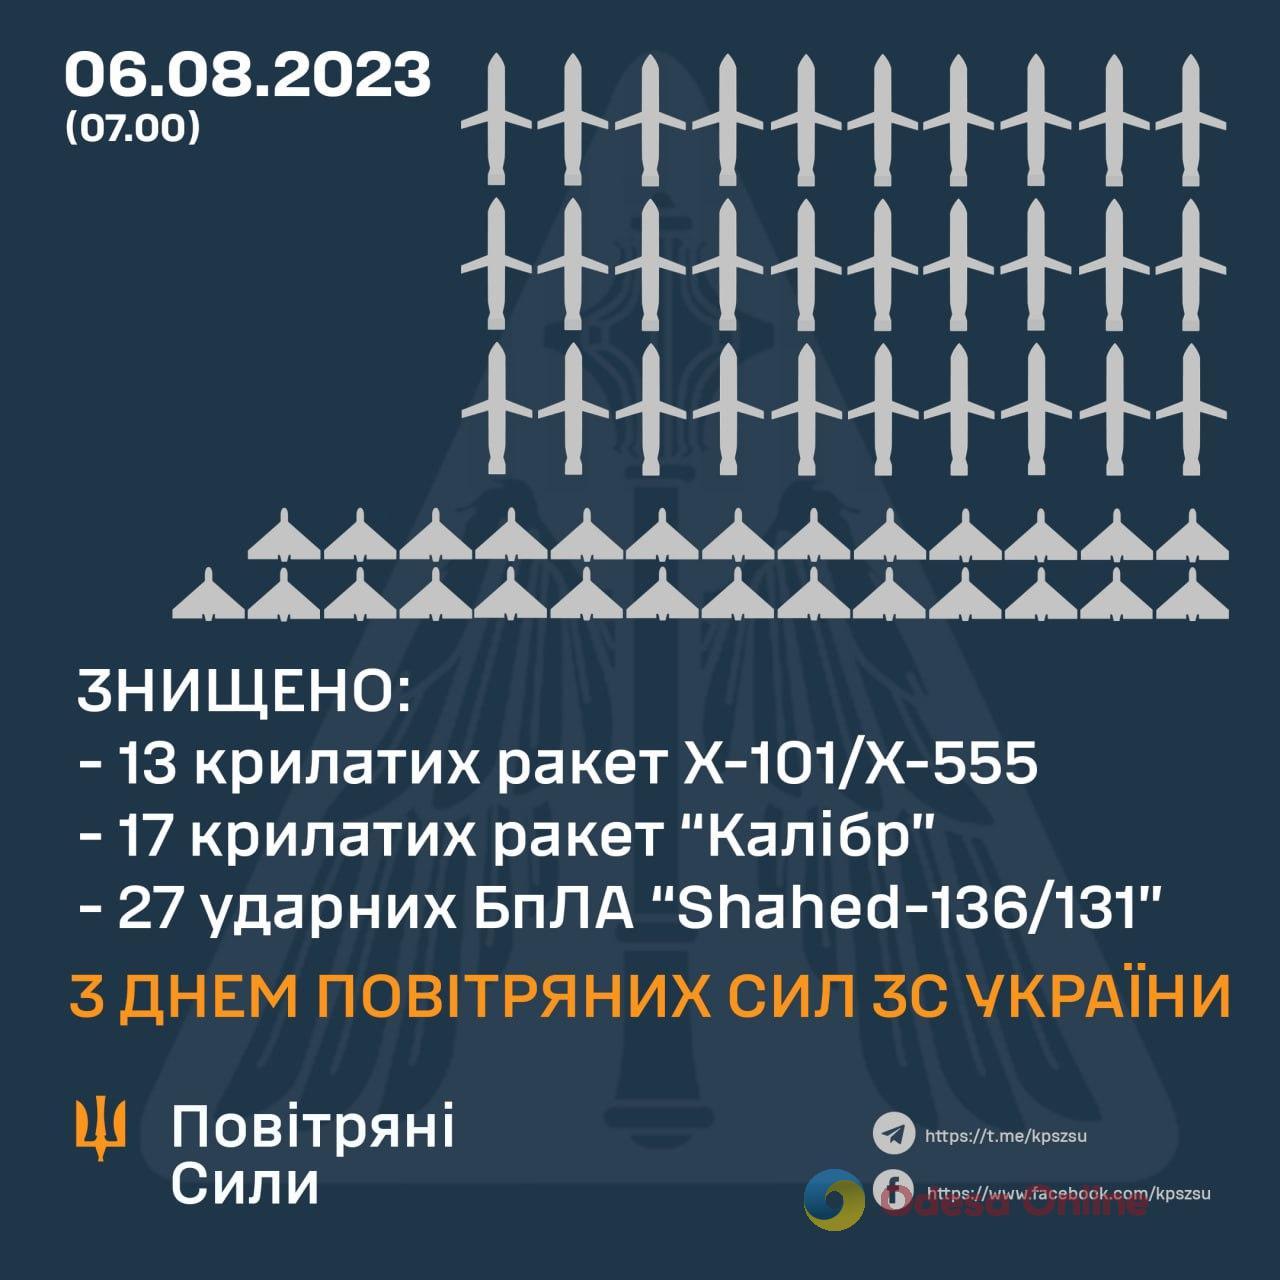 Силы ПВО уничтожили 30 крылатых ракет и 27 «шахедов», которые вечером и ночью россия выпустила по Украине